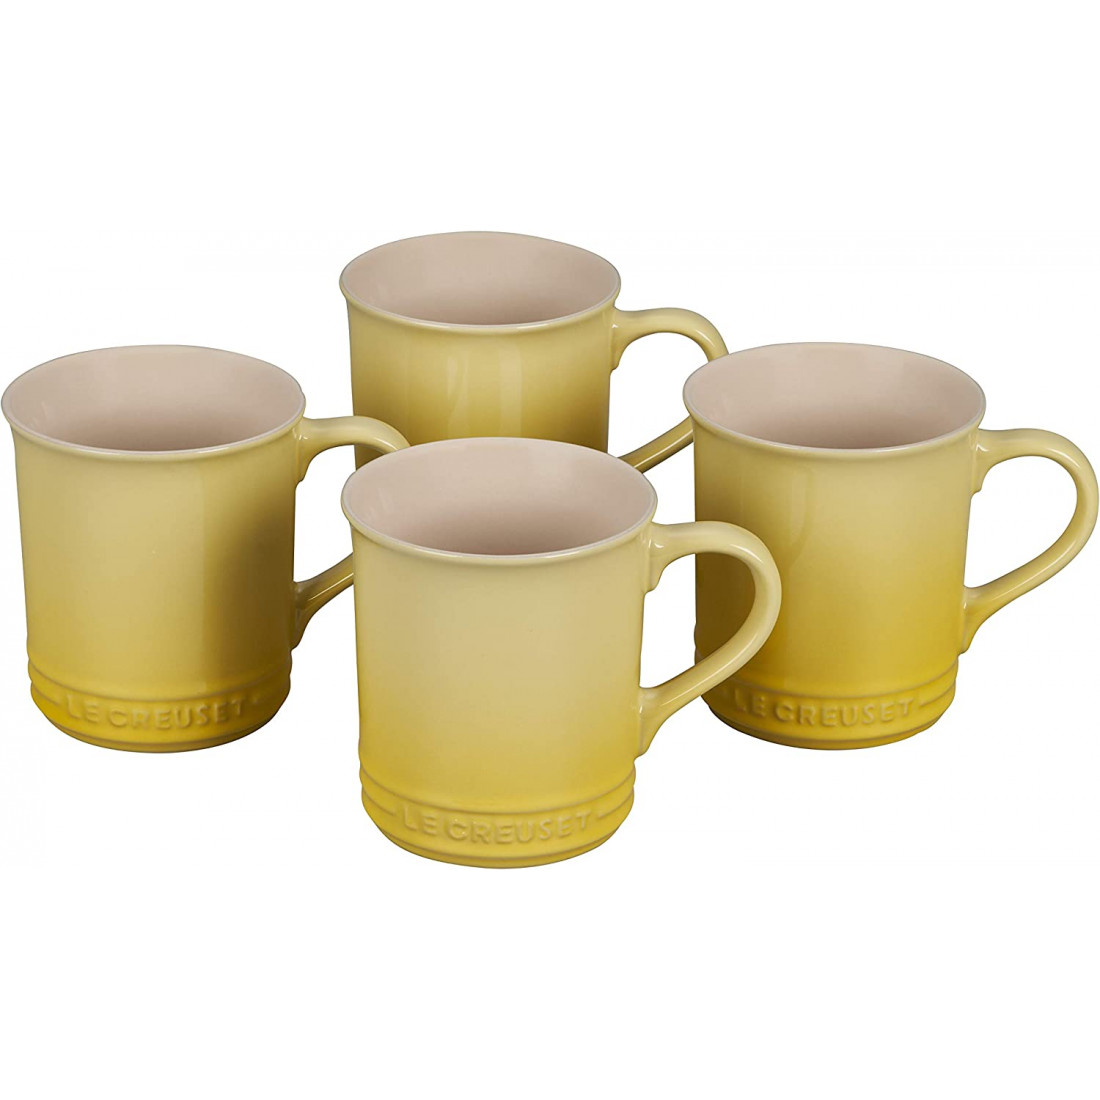 Bộ cốc sứ Le Creuset Stoneware Mugs, 4 cốc